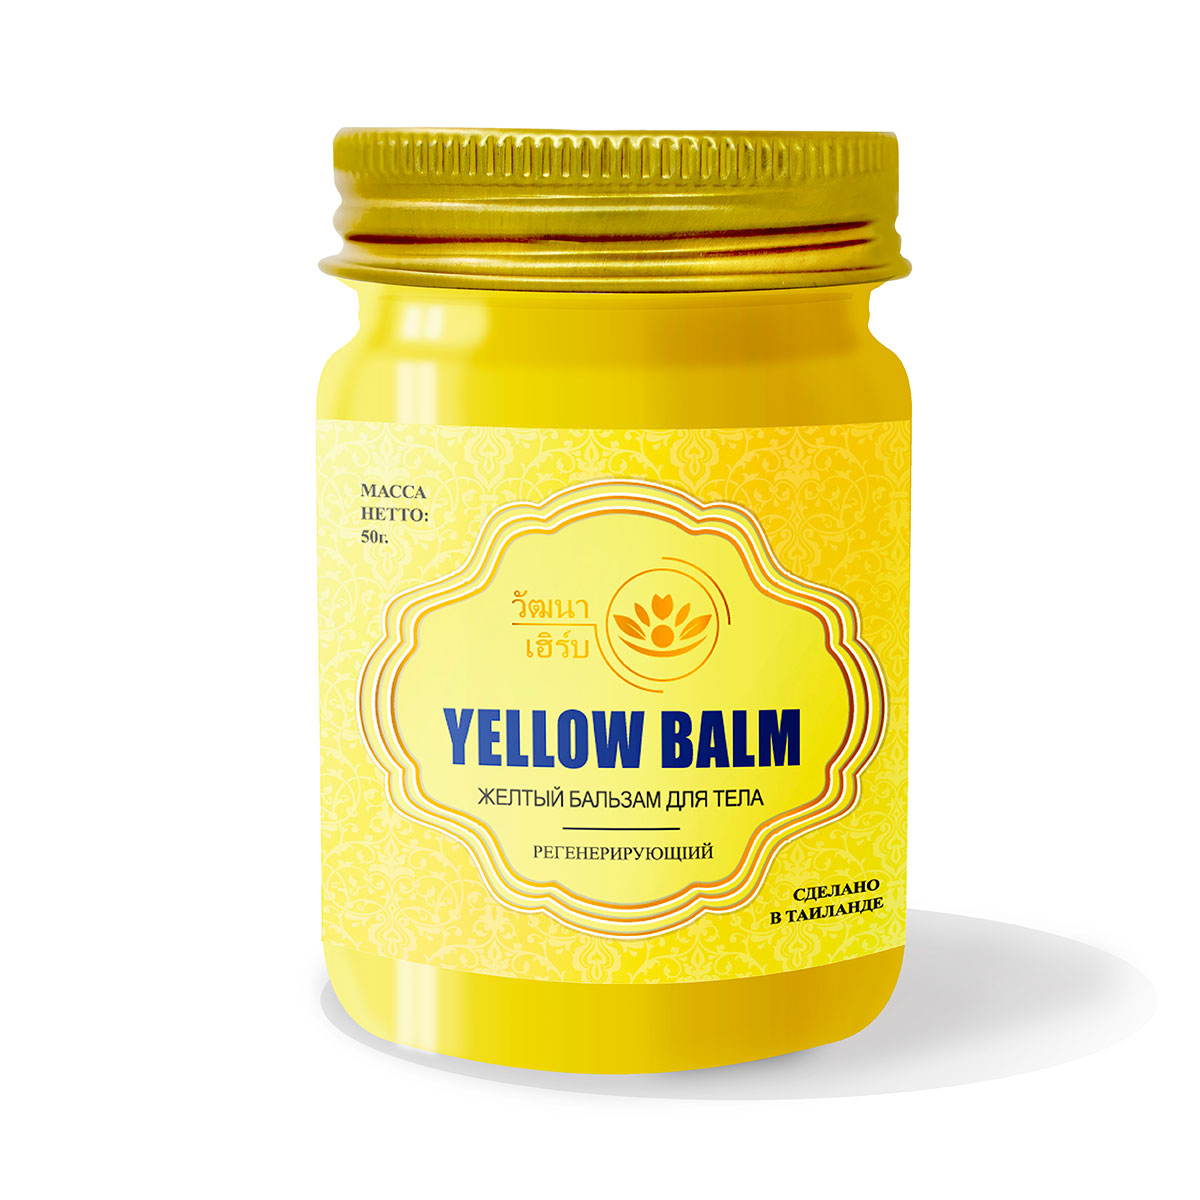 Купить Тайский Желтый бальзам для тела регенерирующий Wattana Herb, 50гр.